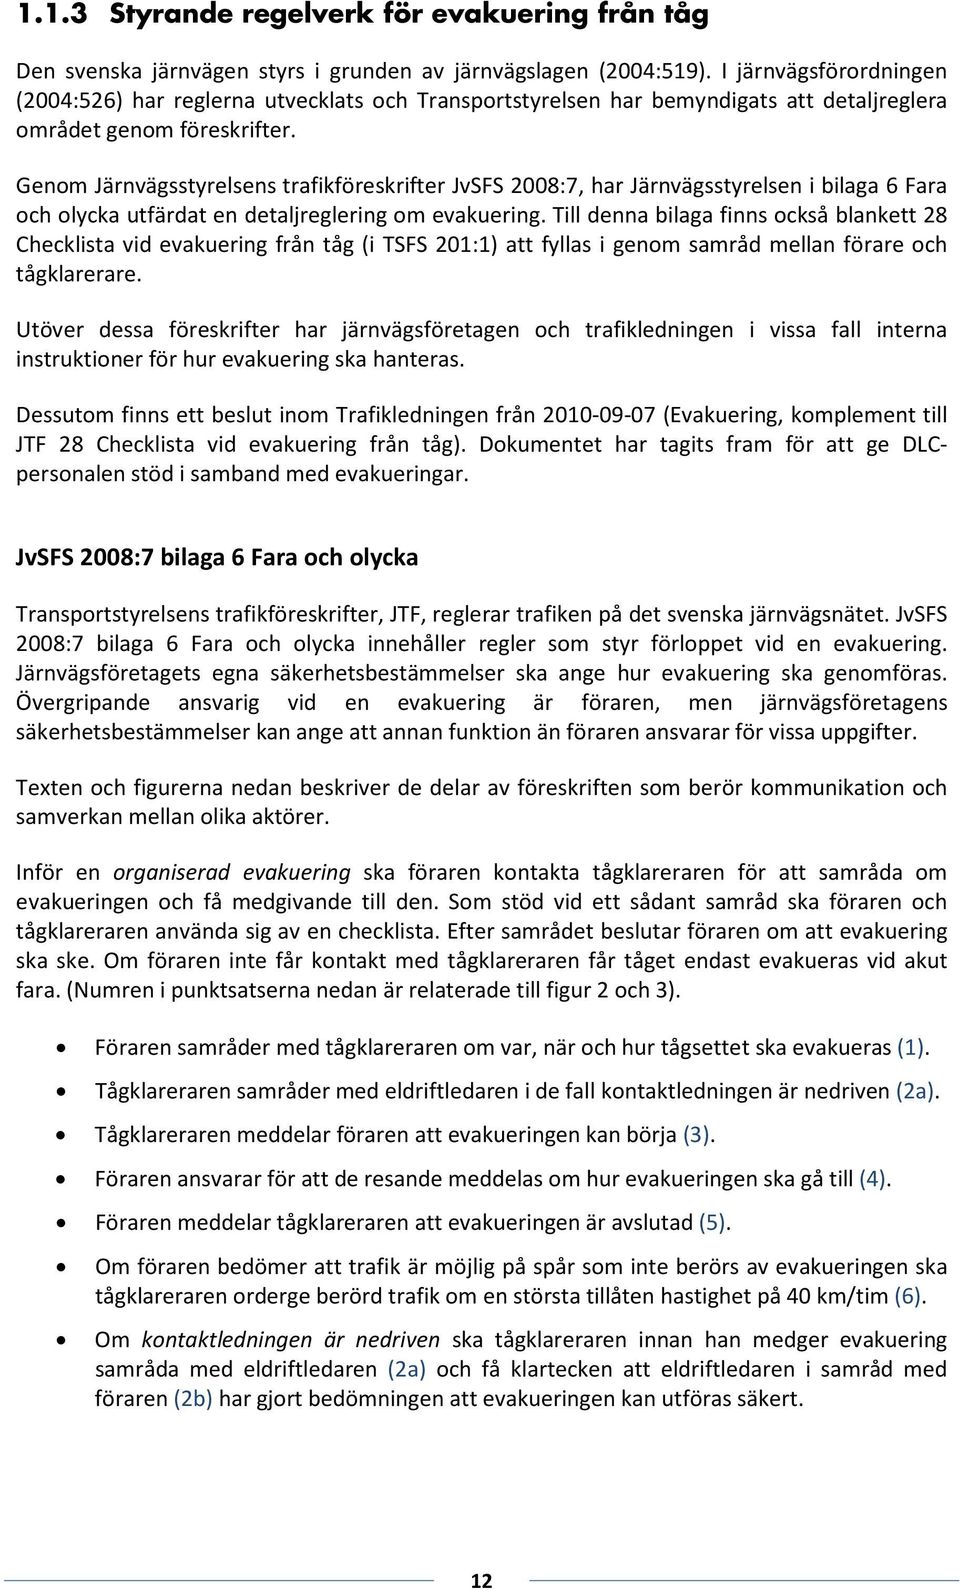 nom Jänvägsstyelsens tafikeskifte JvSFS 2008:7, ha Jänvägsstyelsen i bilaga 6 Faa och olycka utfädat en detaljegleing om evakueing.